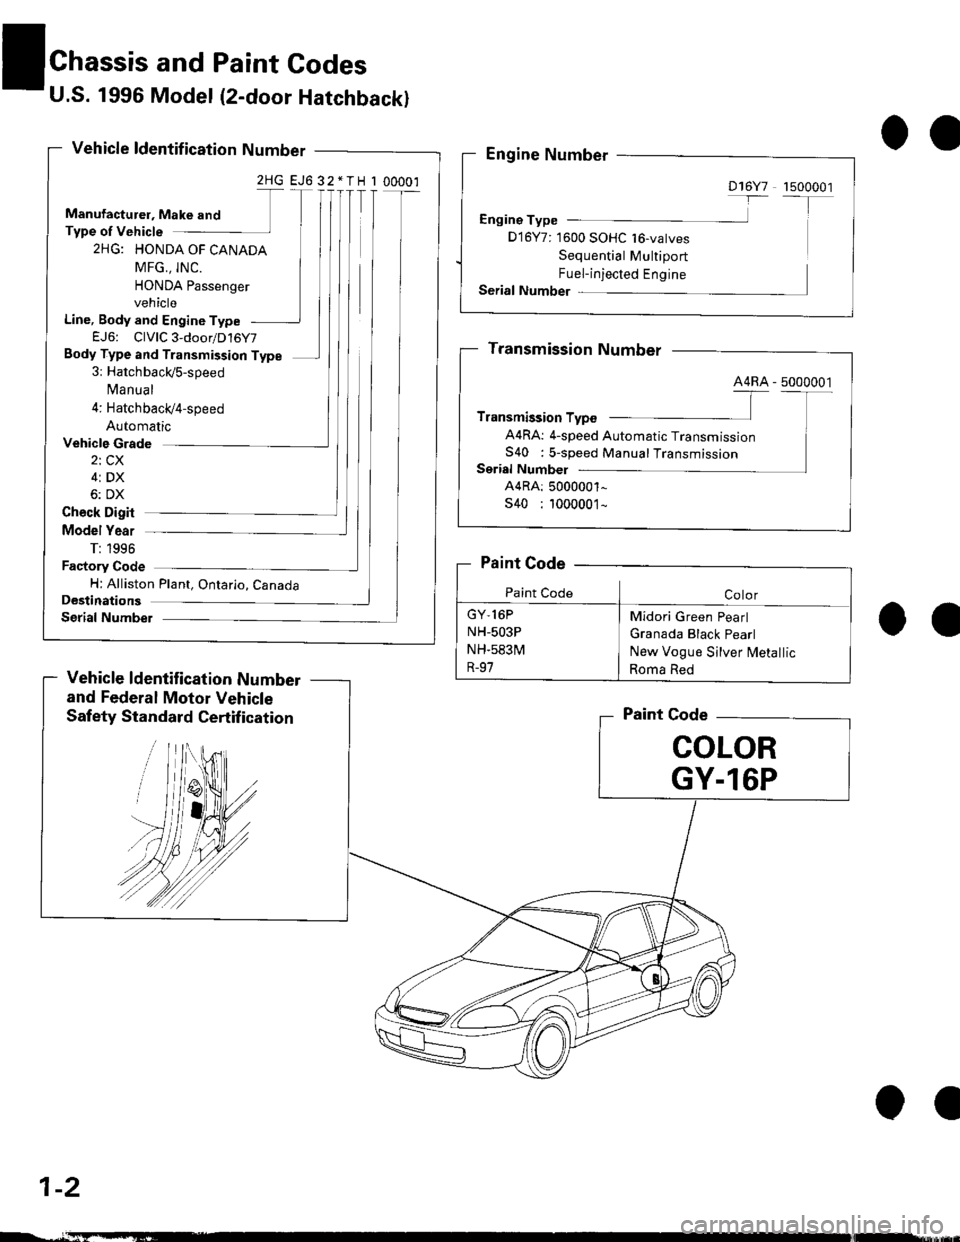 HONDA CIVIC 2000 6.G Workshop Manual U.S. 1996 Model (2-door Hatchback)
Vehicle ldentif ication Number
2HG EJ6 32*TH I 00001
Manufacturel, Make and
Type of Vehicle
2HG: HONDA OF CANADA
MFG., INC.
HONDA Passenger
vehicle
Line, Body and En